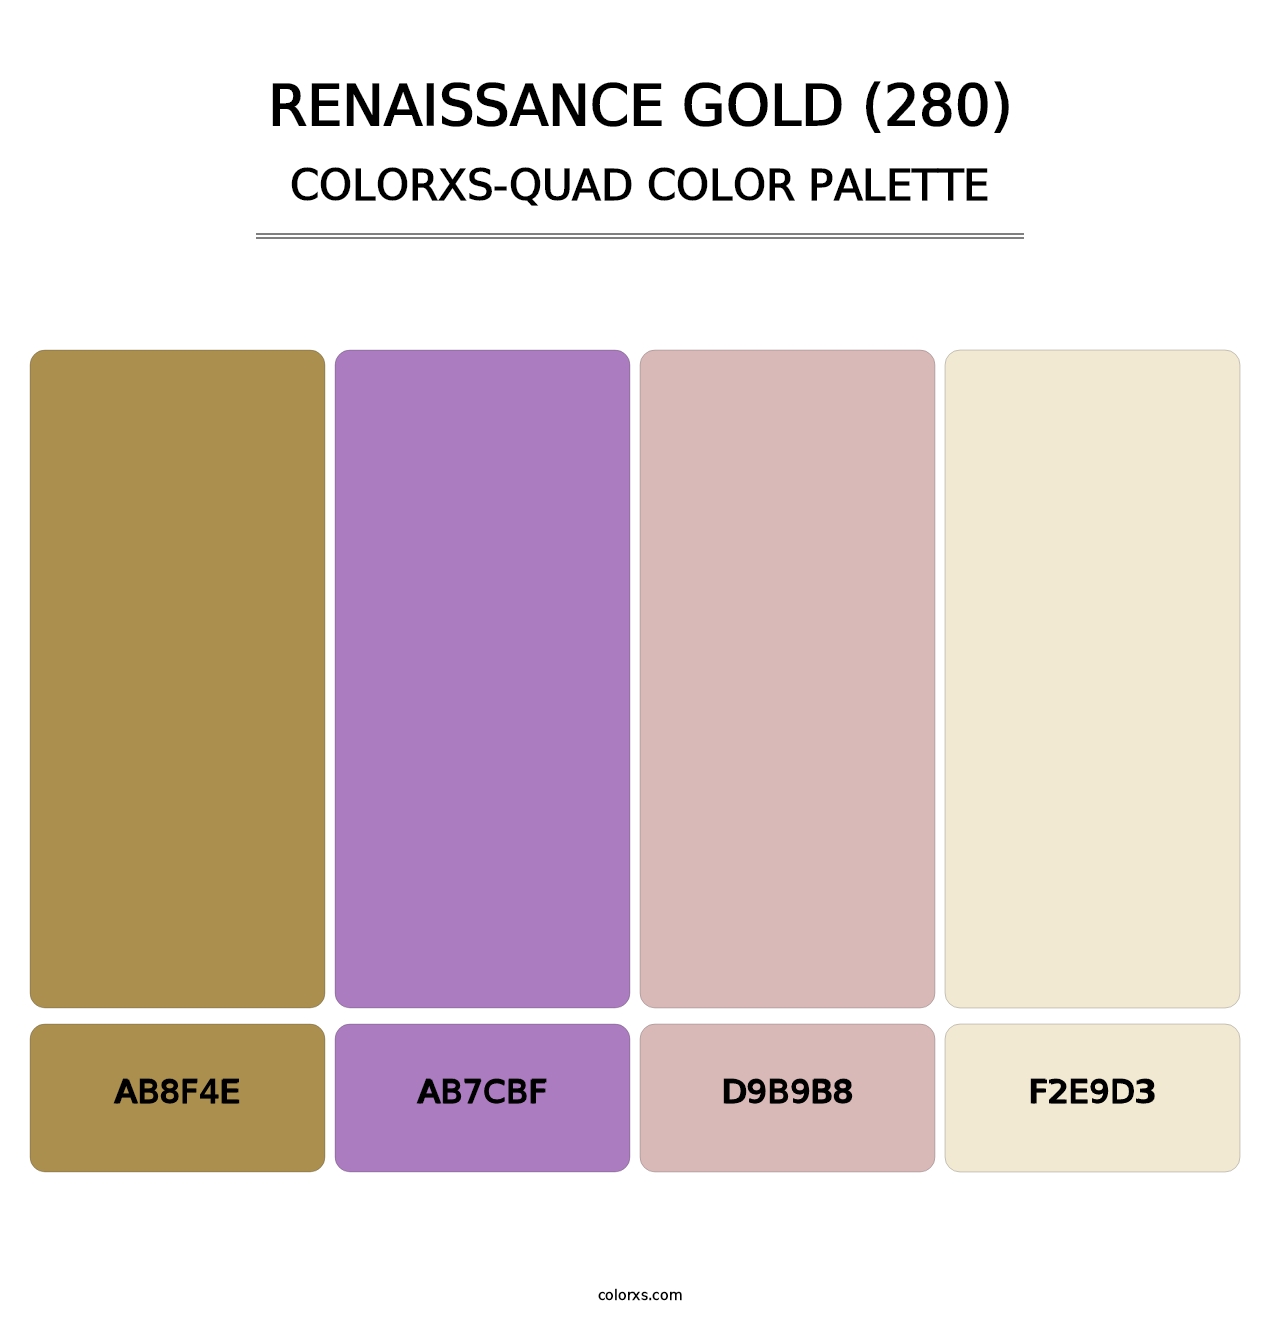 Renaissance Gold (280) - Colorxs Quad Palette